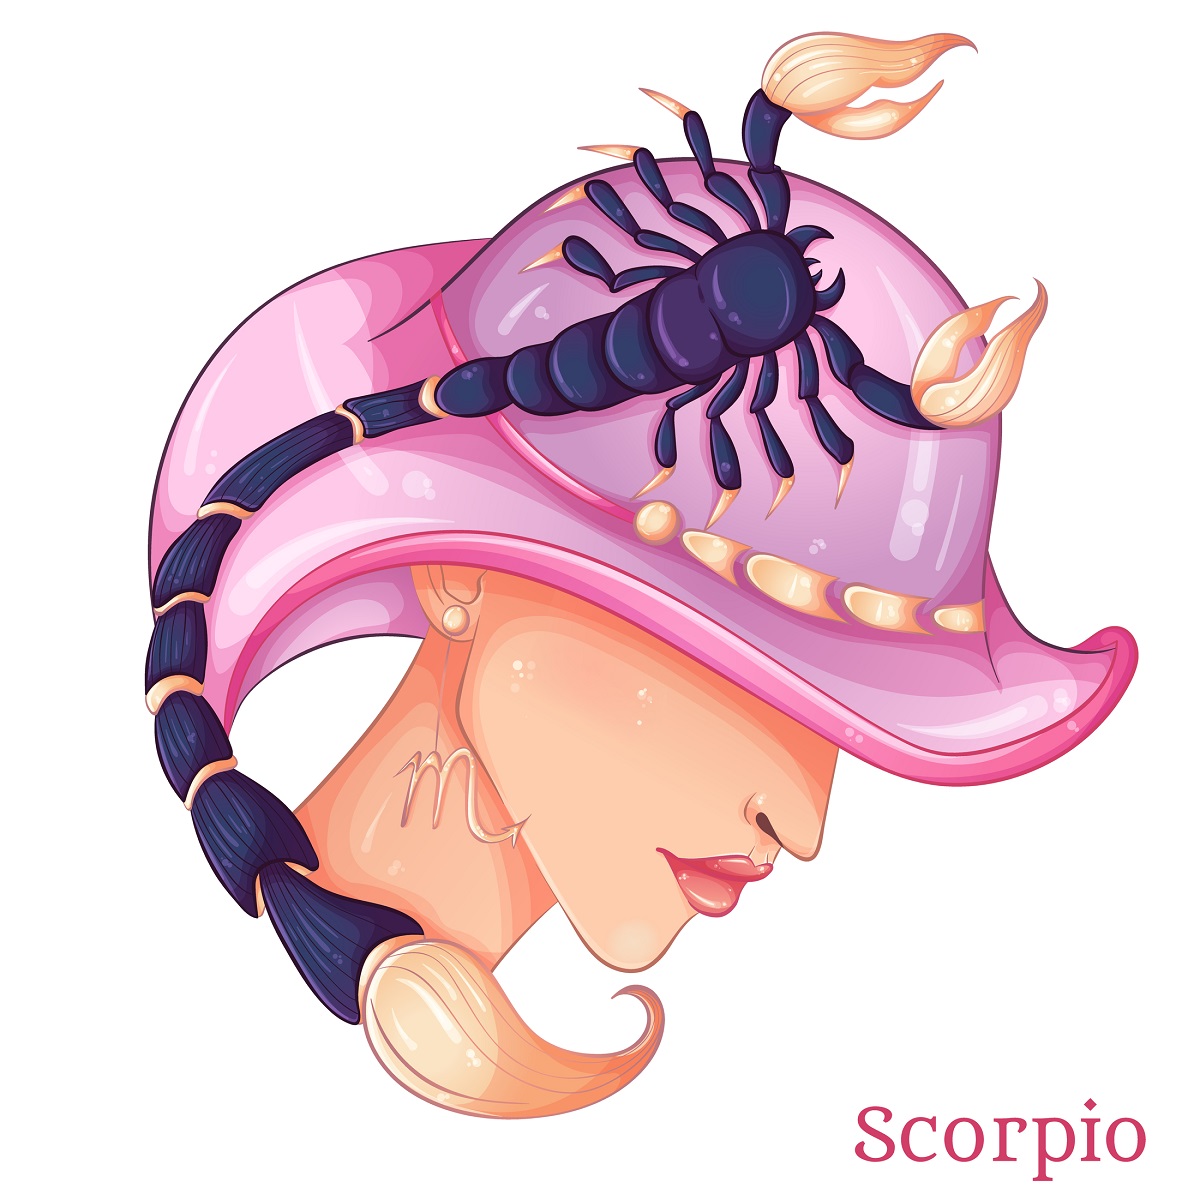 O femeie frumoasă cu o pălărie roz pe cap pe care se află prins un scorpion pentru a reprezenta zodia scorpionului